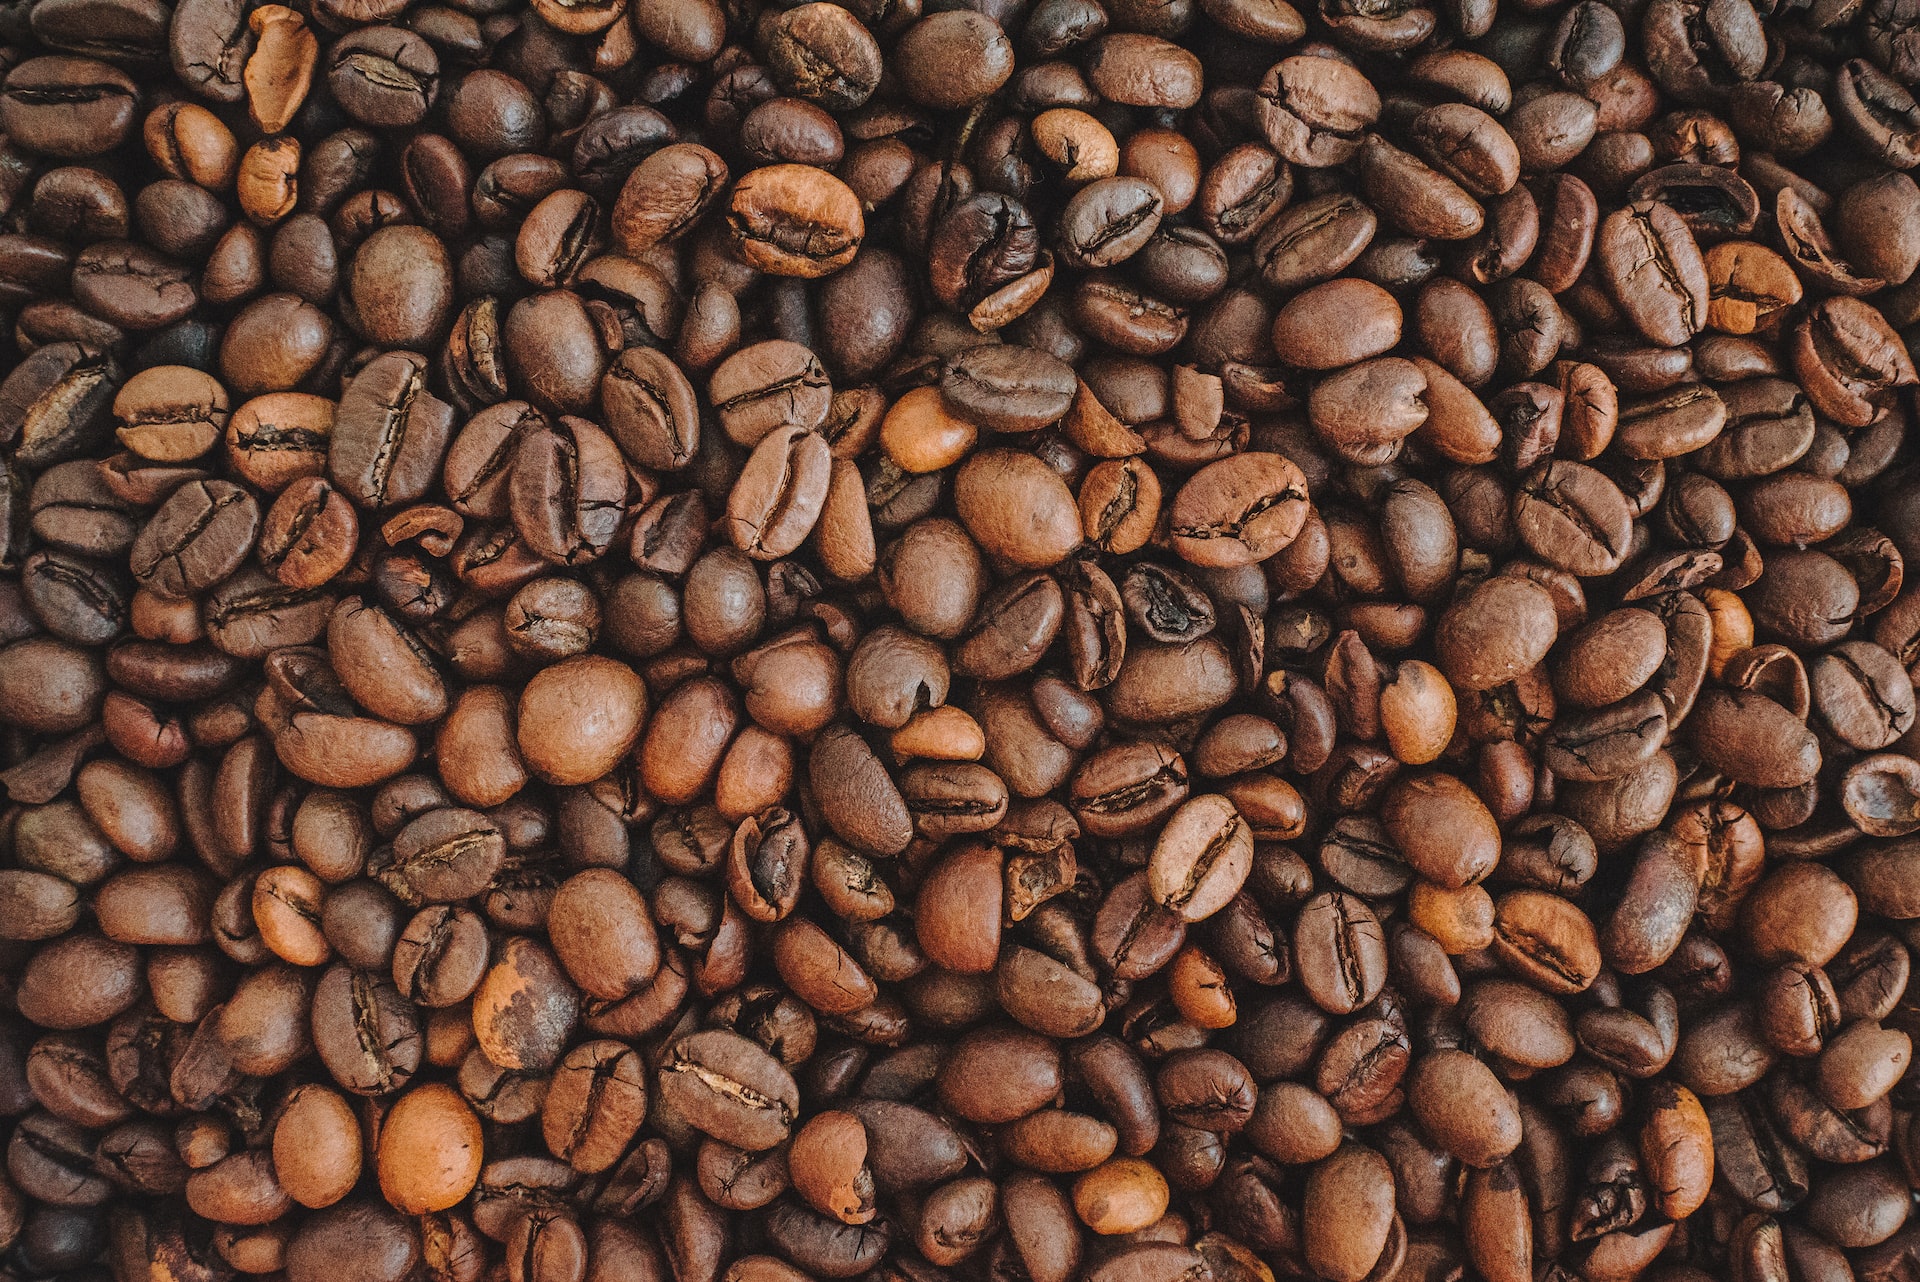 Where Do Coffee Shops Get Their Beans